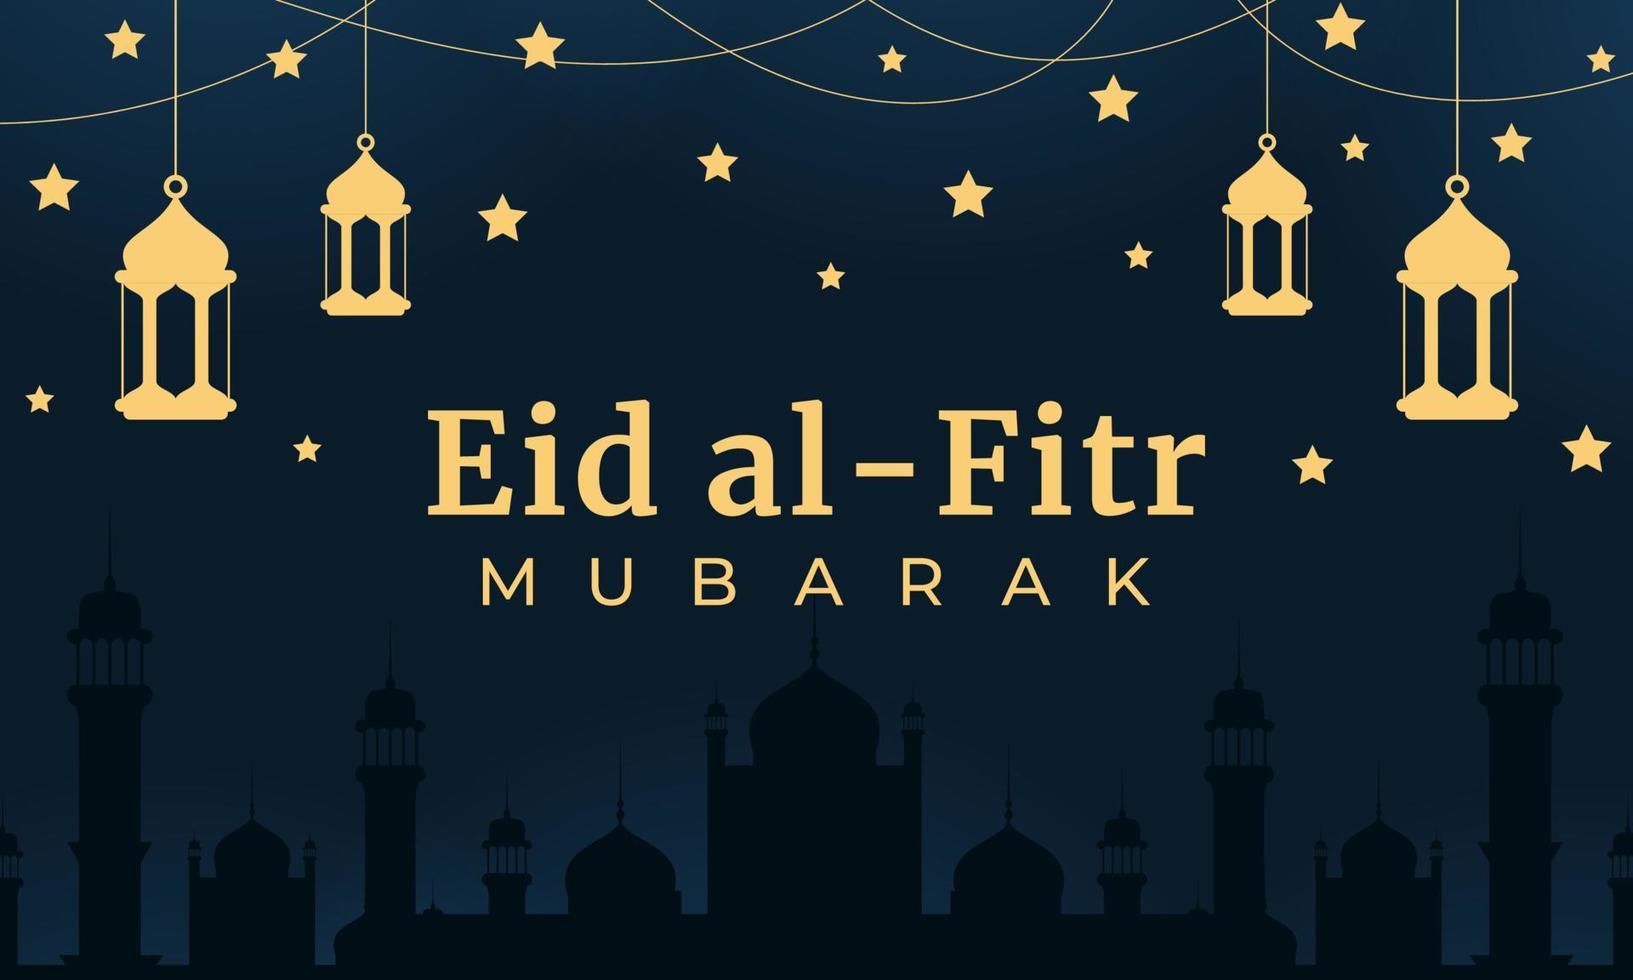 banner vectorial horizontal de eid al fitr mubarak. tarjeta de felicitación eid al fitr mubarak. fondo islámico. ilustración vectorial vector